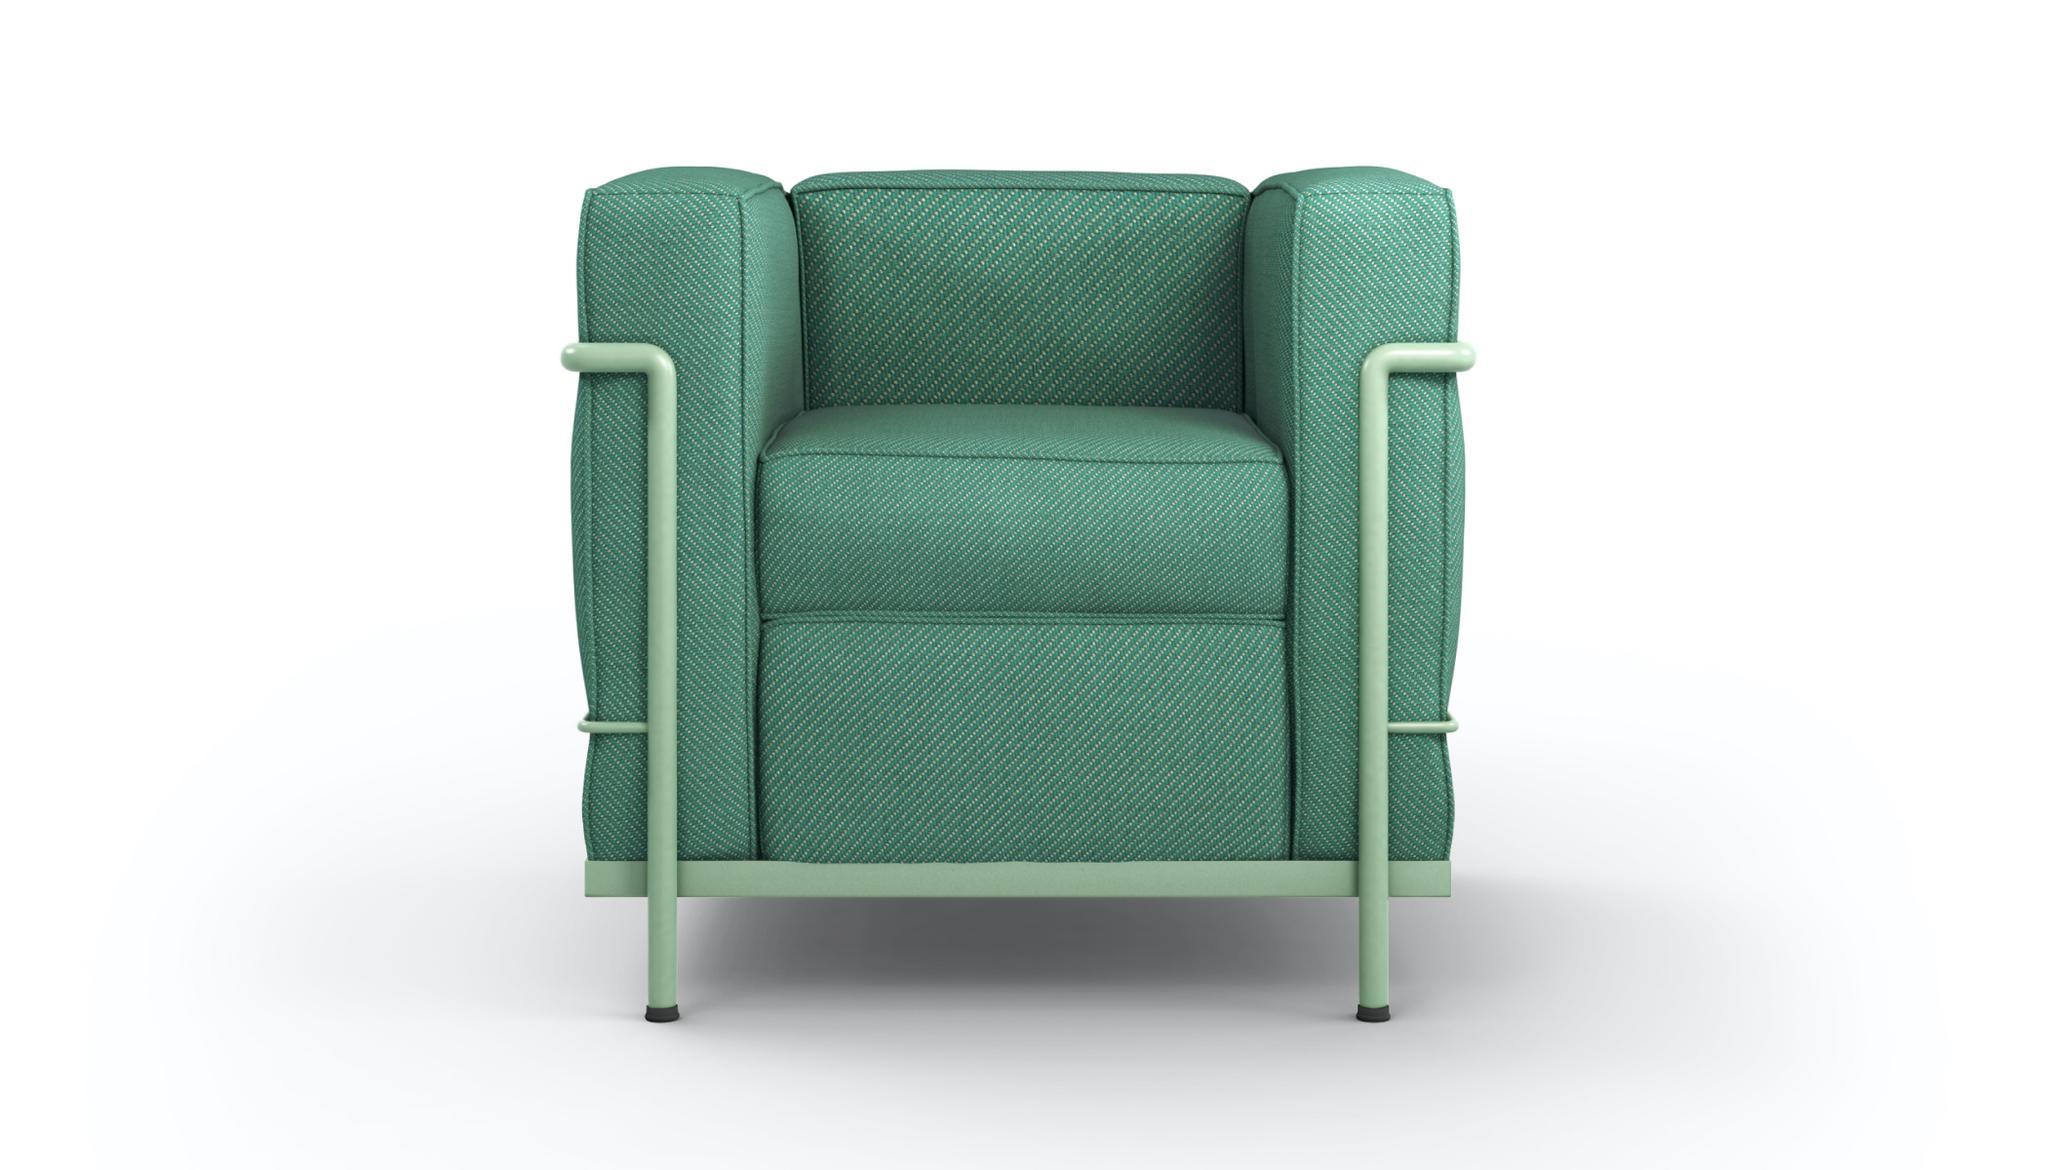 Sessel, entworfen von Le Corbusier, Pierre Jeanneret und Charlotte Perriand im Jahr 1928.
Hergestellt von Cassina in Italien.

Der zeitlose, einzigartige und zutiefst authentische LC2 Sessel hat die Geschichte des Möbeldesigns mitgeschrieben und